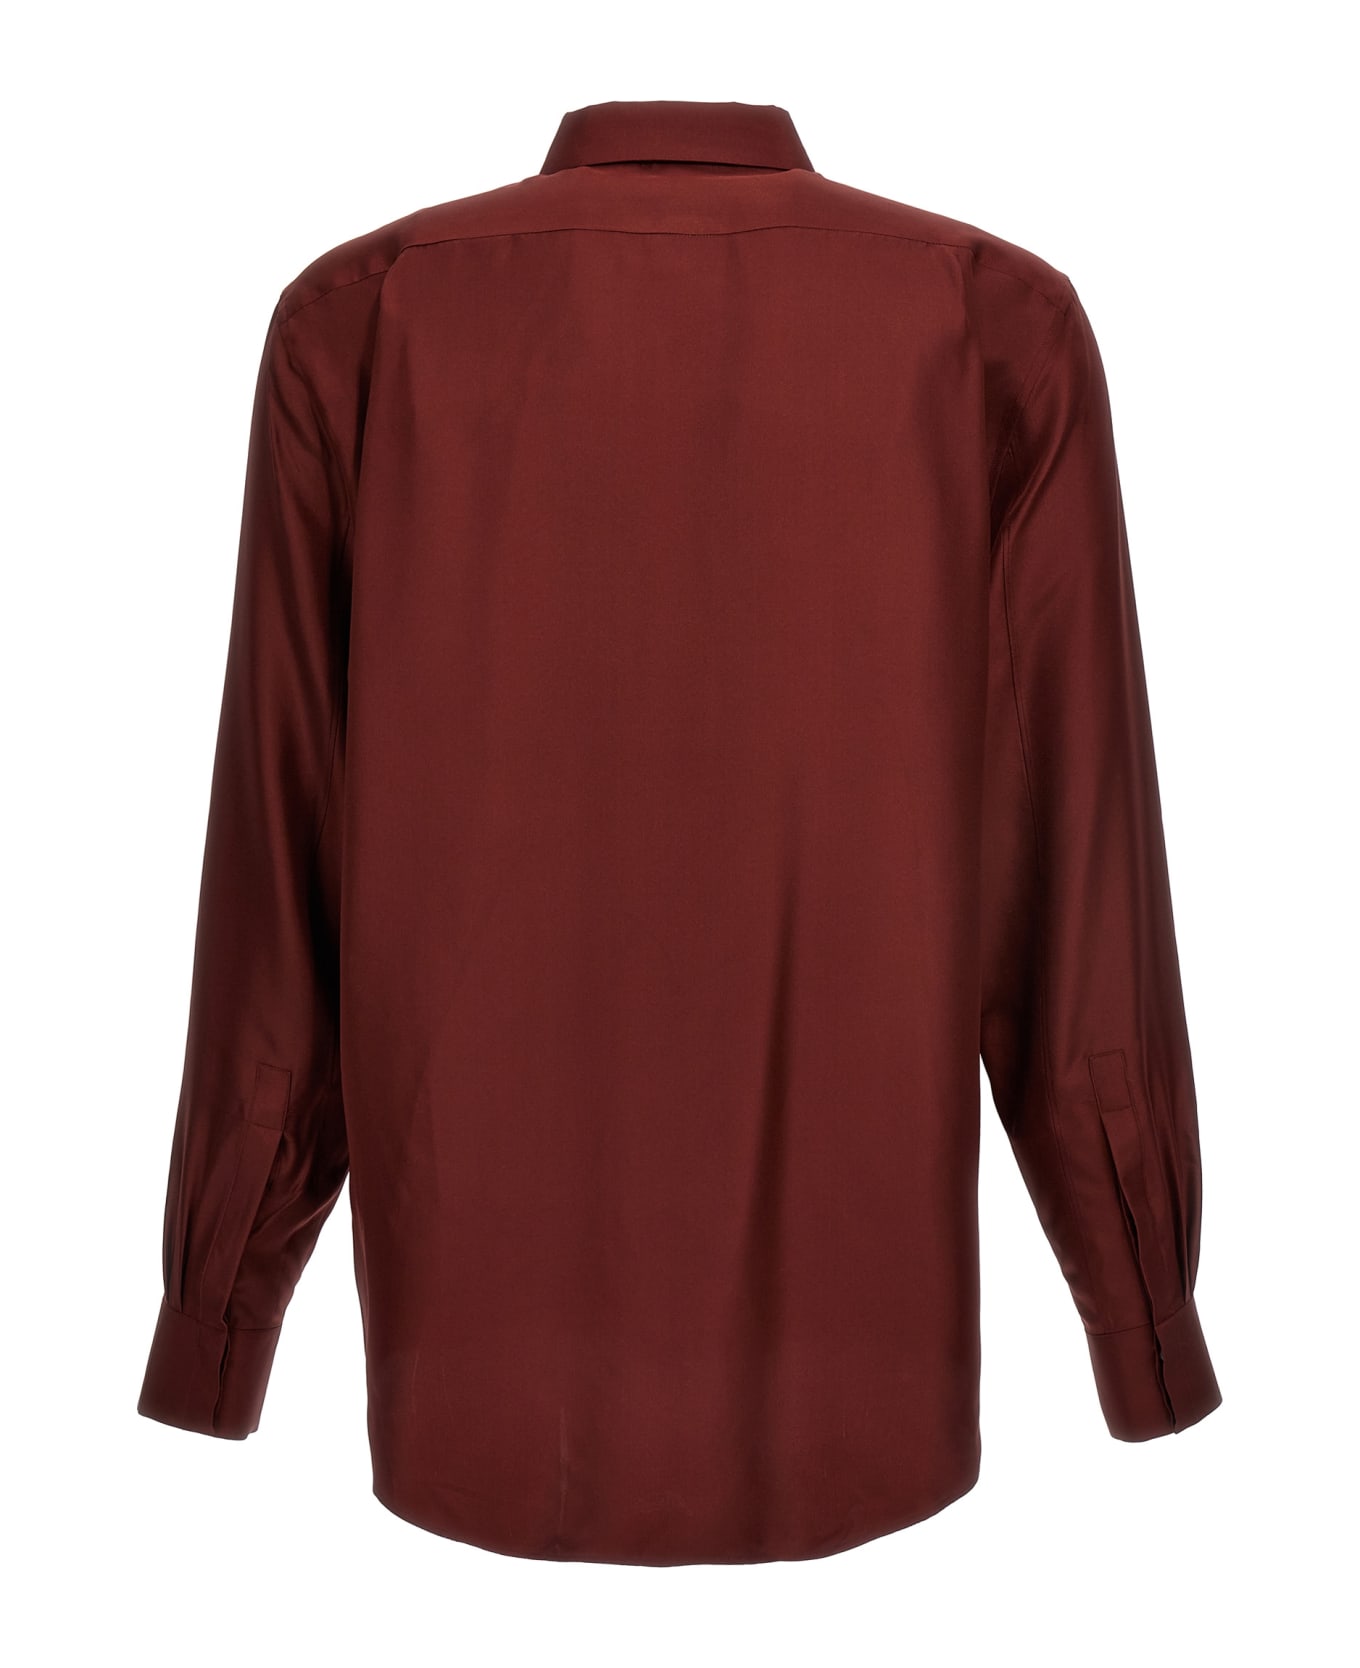 Alexander McQueen Silk Shirt - Bordeaux